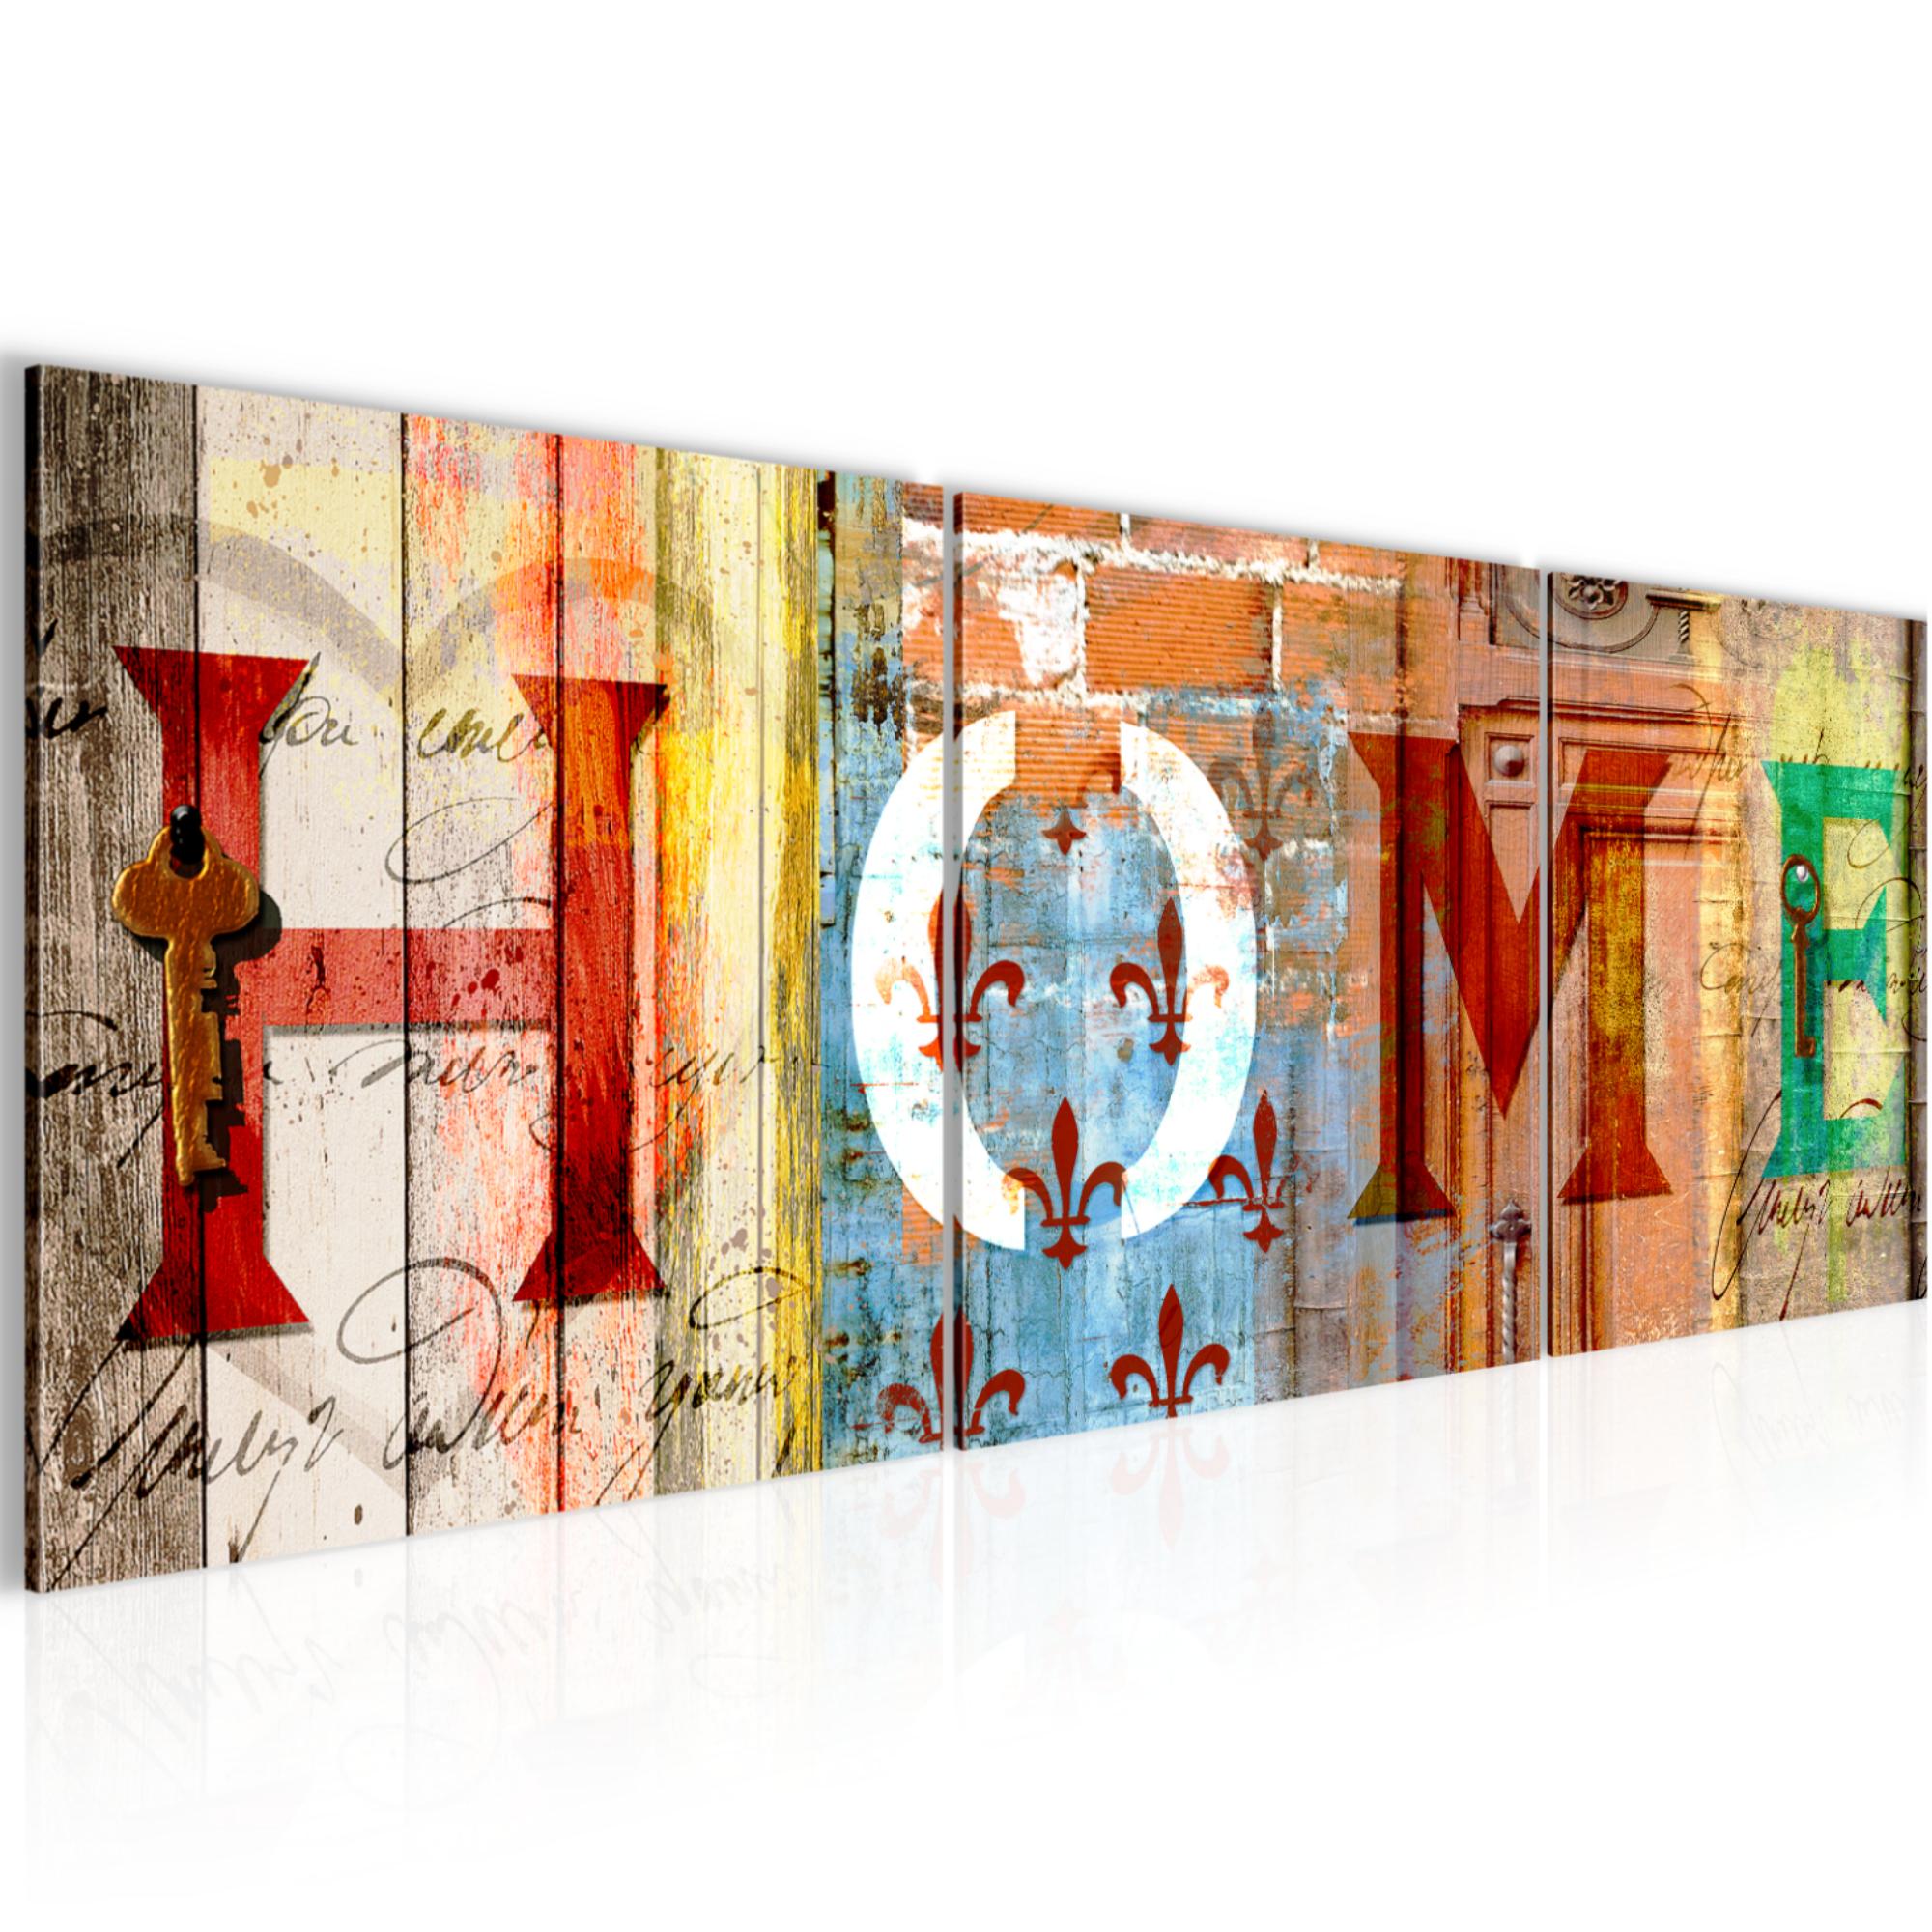 Runa Art Dekoration: 200+ Produkte jetzt ab 14,99 €